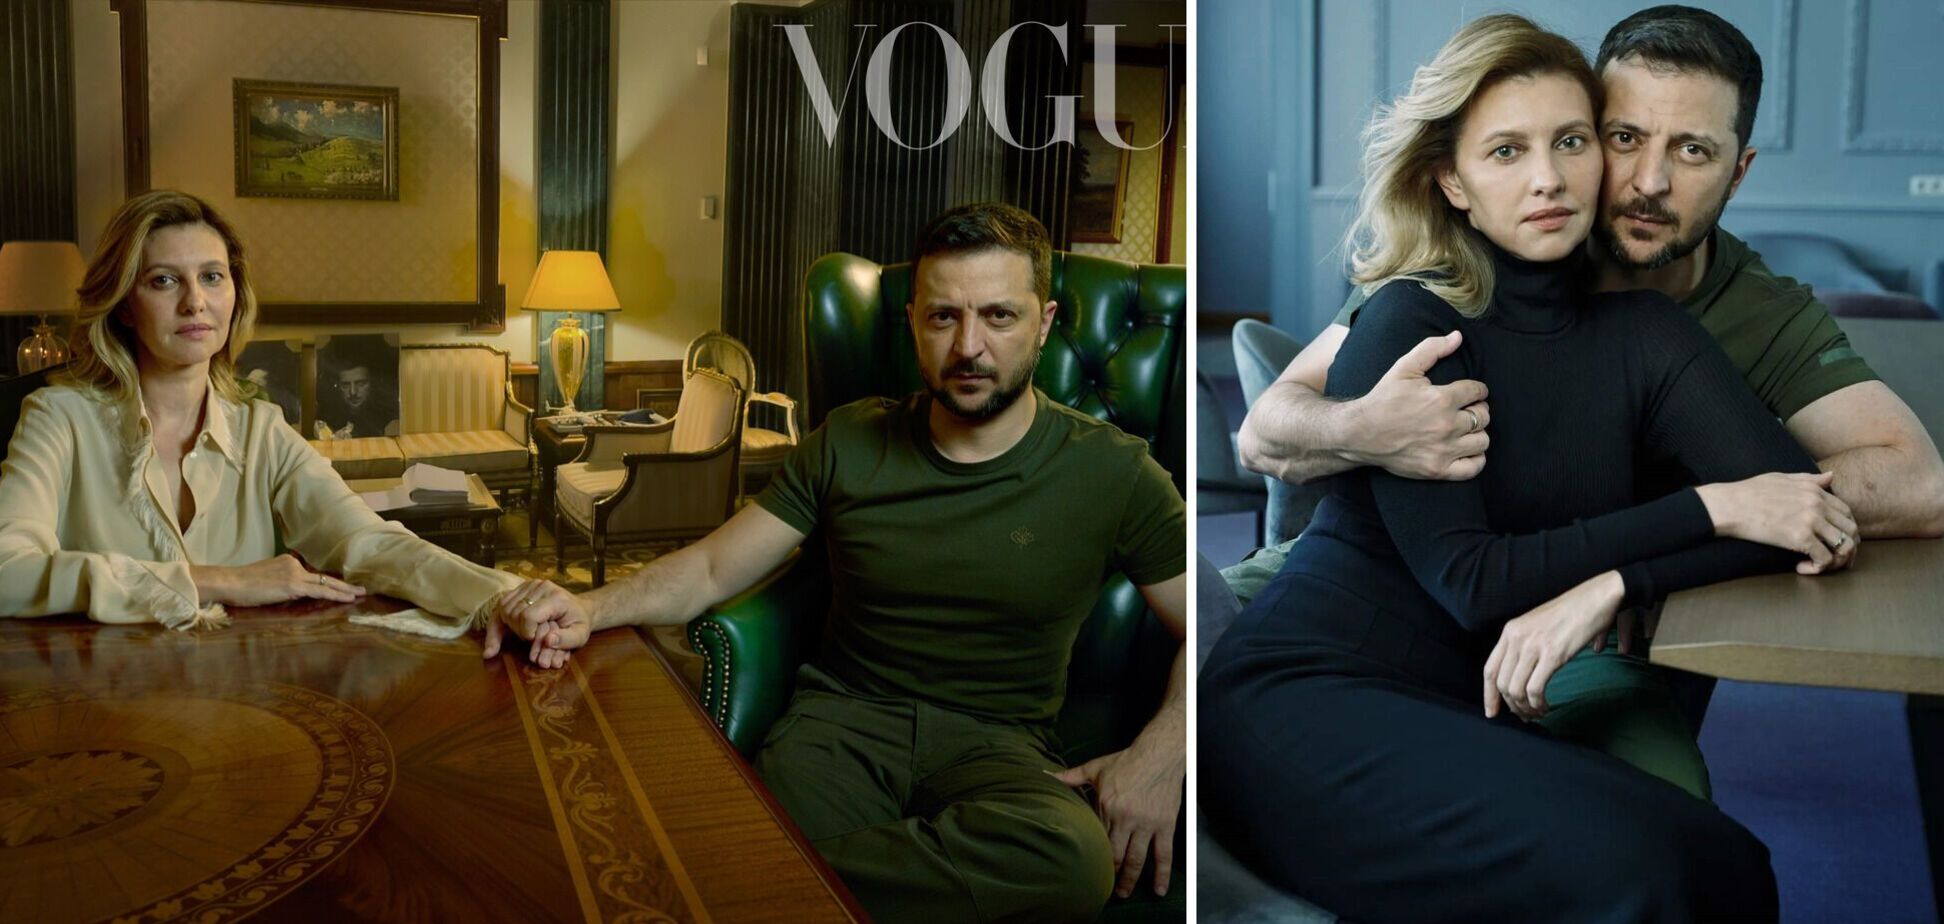 Запад все больше устает от войны, поэтому фотосессия Зеленского в Vogue очень своевременна